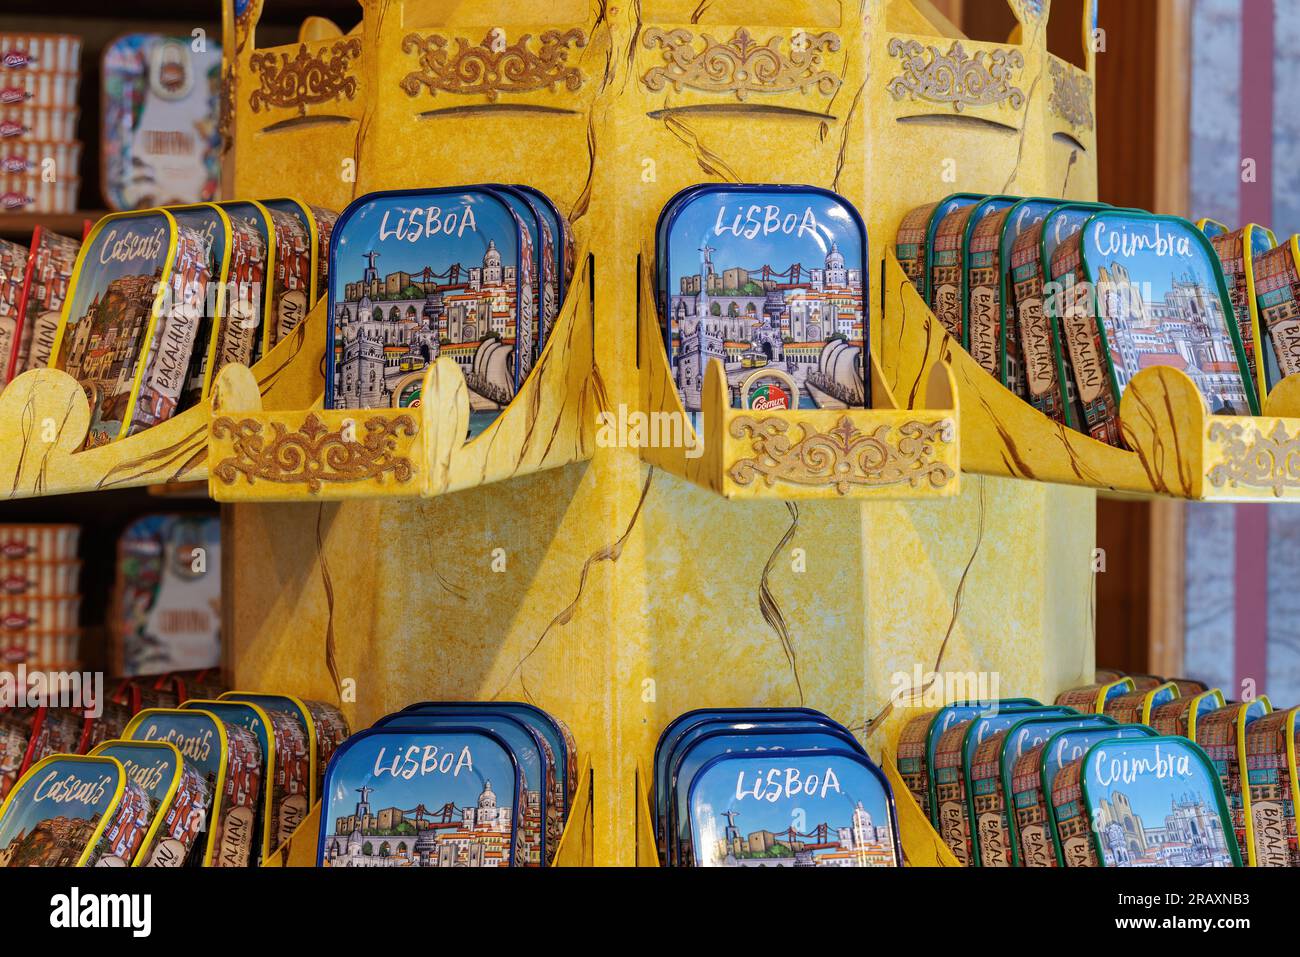 Fischkonserven von Comur zum Verkauf in Lissabon, Portugal. Lissabons Souvenir, Bacalhau, Kabeljau in Olivenöl mit Knoblauch gebacken. Dekorative konservas, Fischdosen. Stockfoto